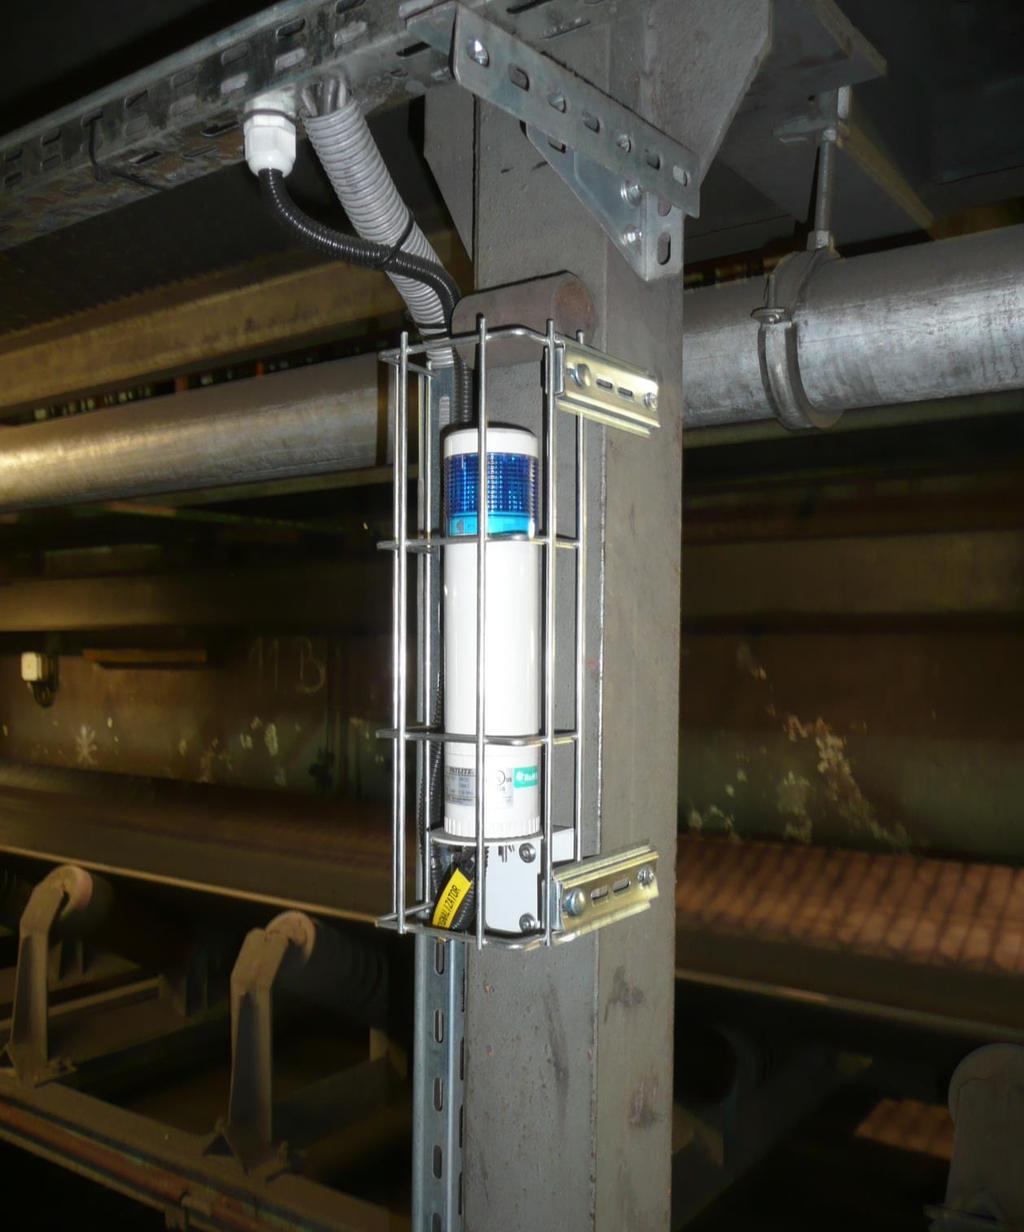 Nadrzędna instalacja monitorowania stężenia tlenu i sterowania urządzeniami ma za zadanie utrzymanie bezpiecznego poziomu tlenu w pomieszczeniu